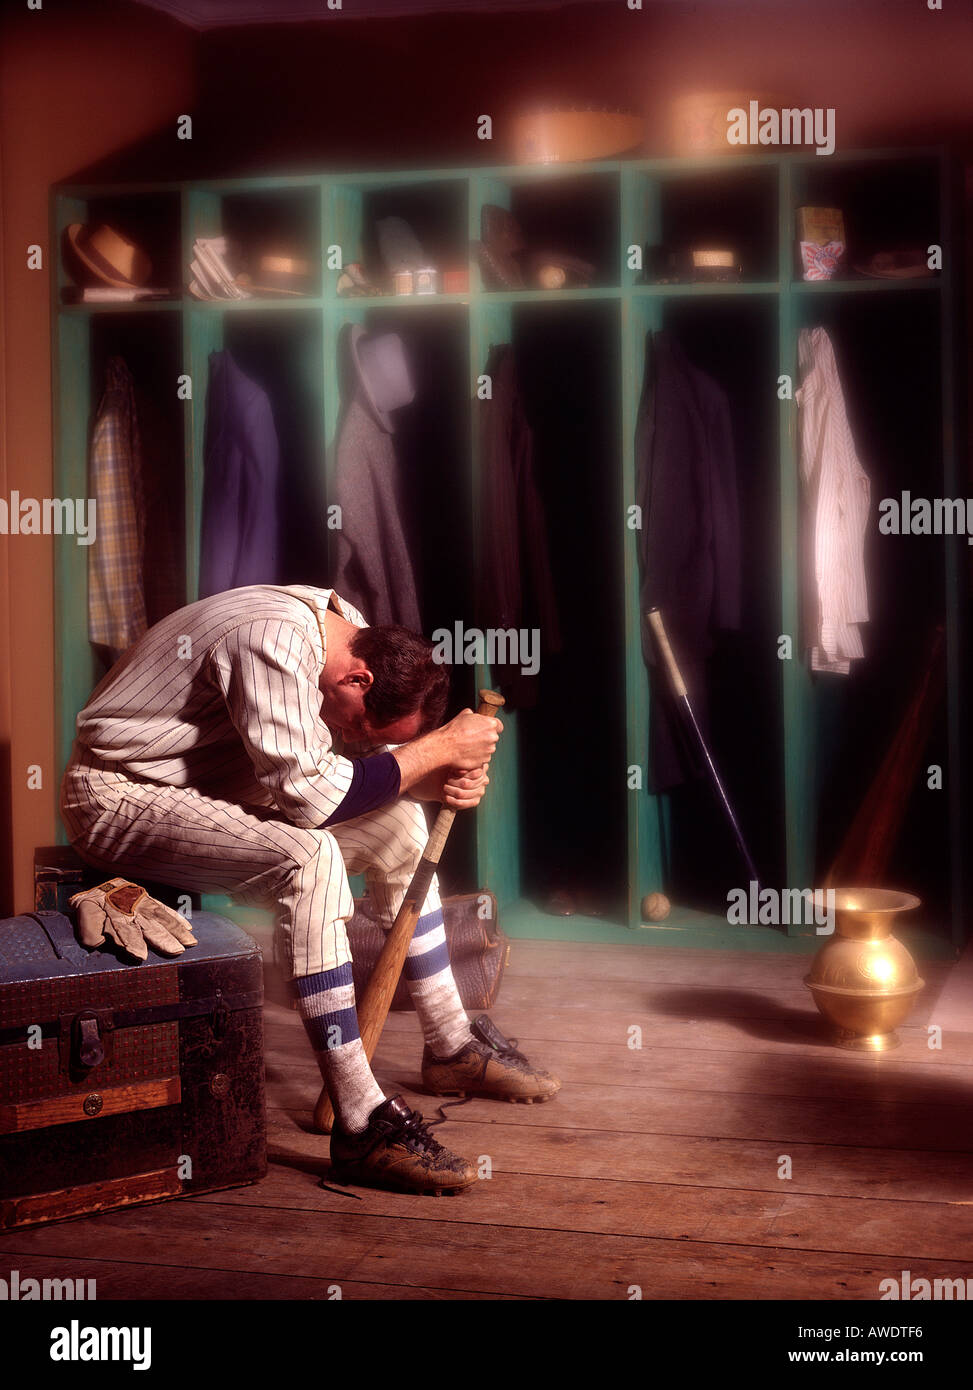 Baseball Spieler alte Mode Workwear-Umkleideraum Spucknapf Geheimnis Fantasy redaktionelle Stockfoto